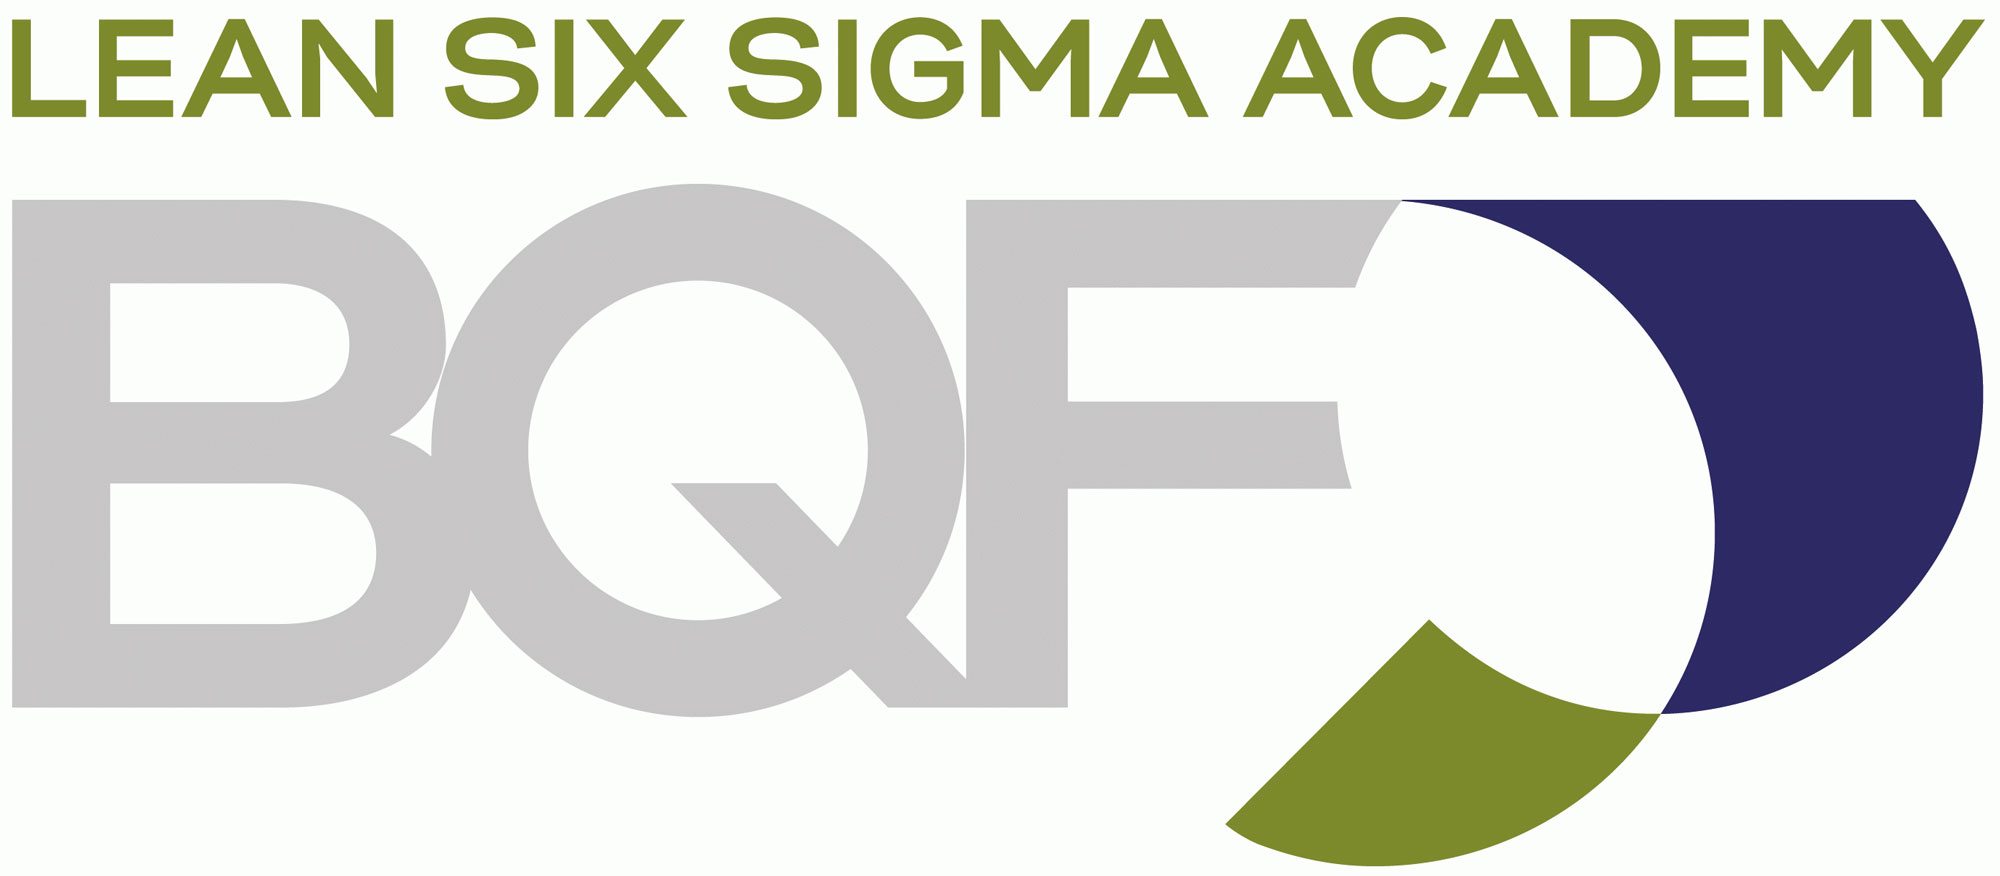 Lean Six Sigma Academy BQF